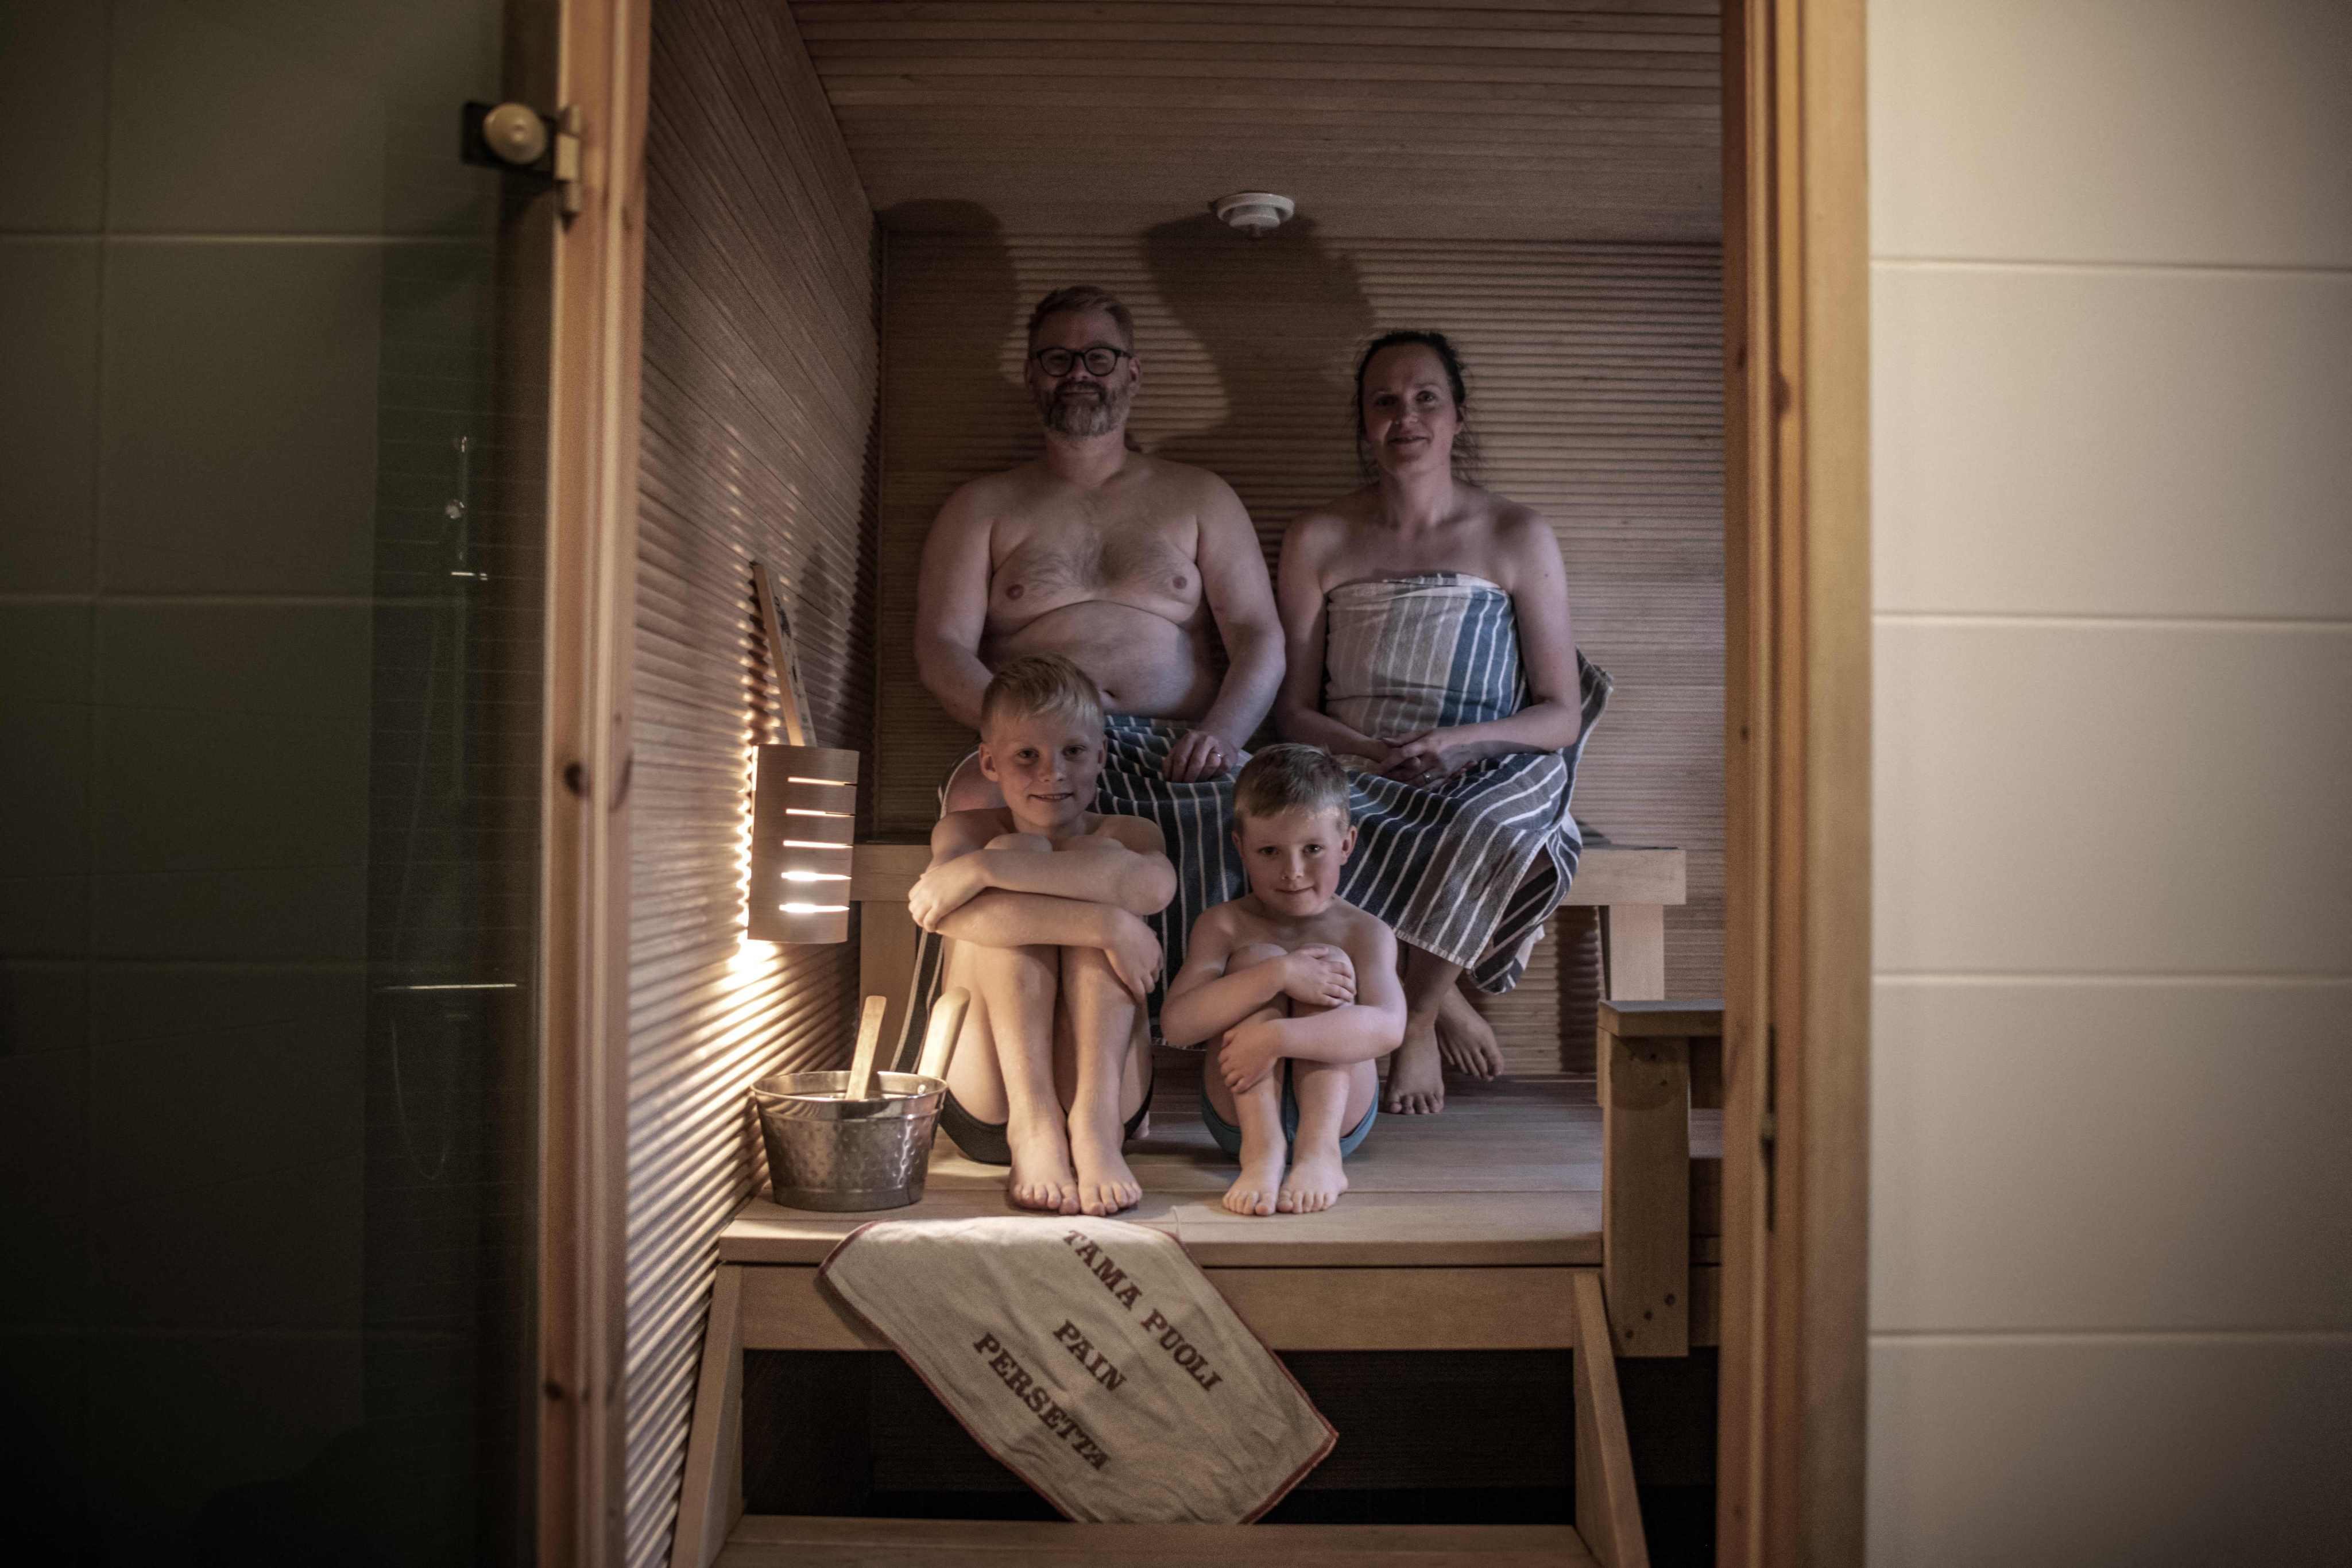 Mitos y verdades sobre la sauna y su calor seco - BLOG